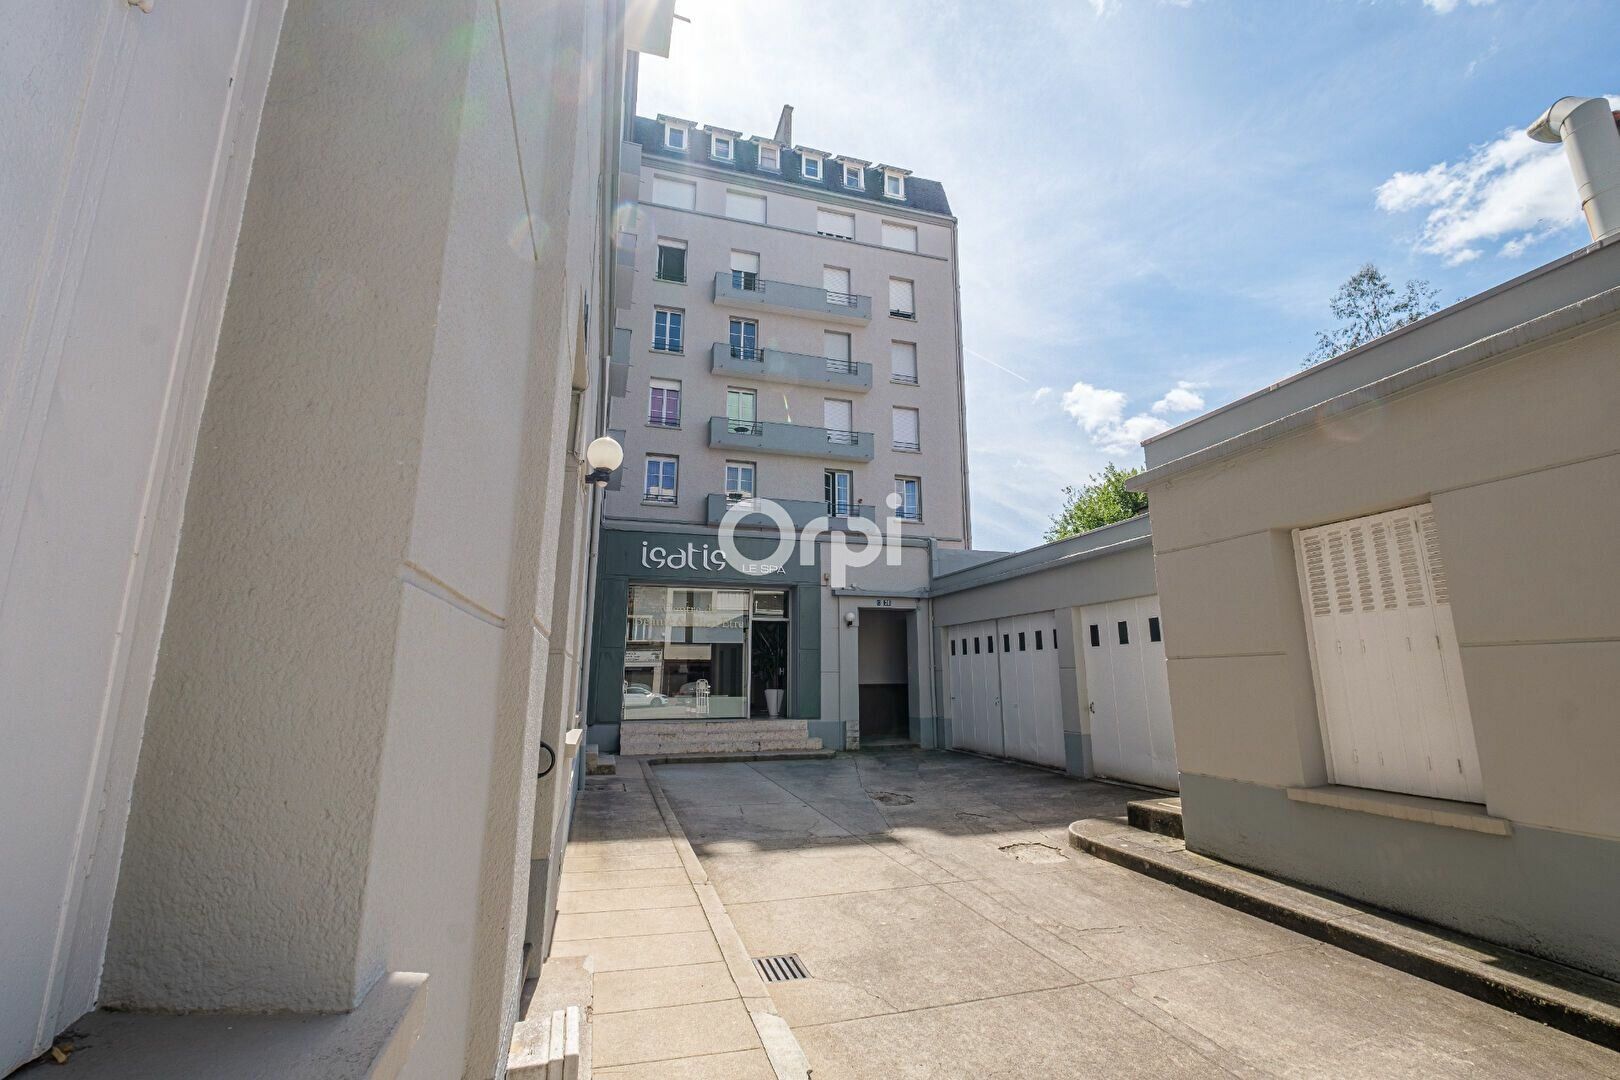 Appartement à vendre 2 47m2 à Limoges vignette-7